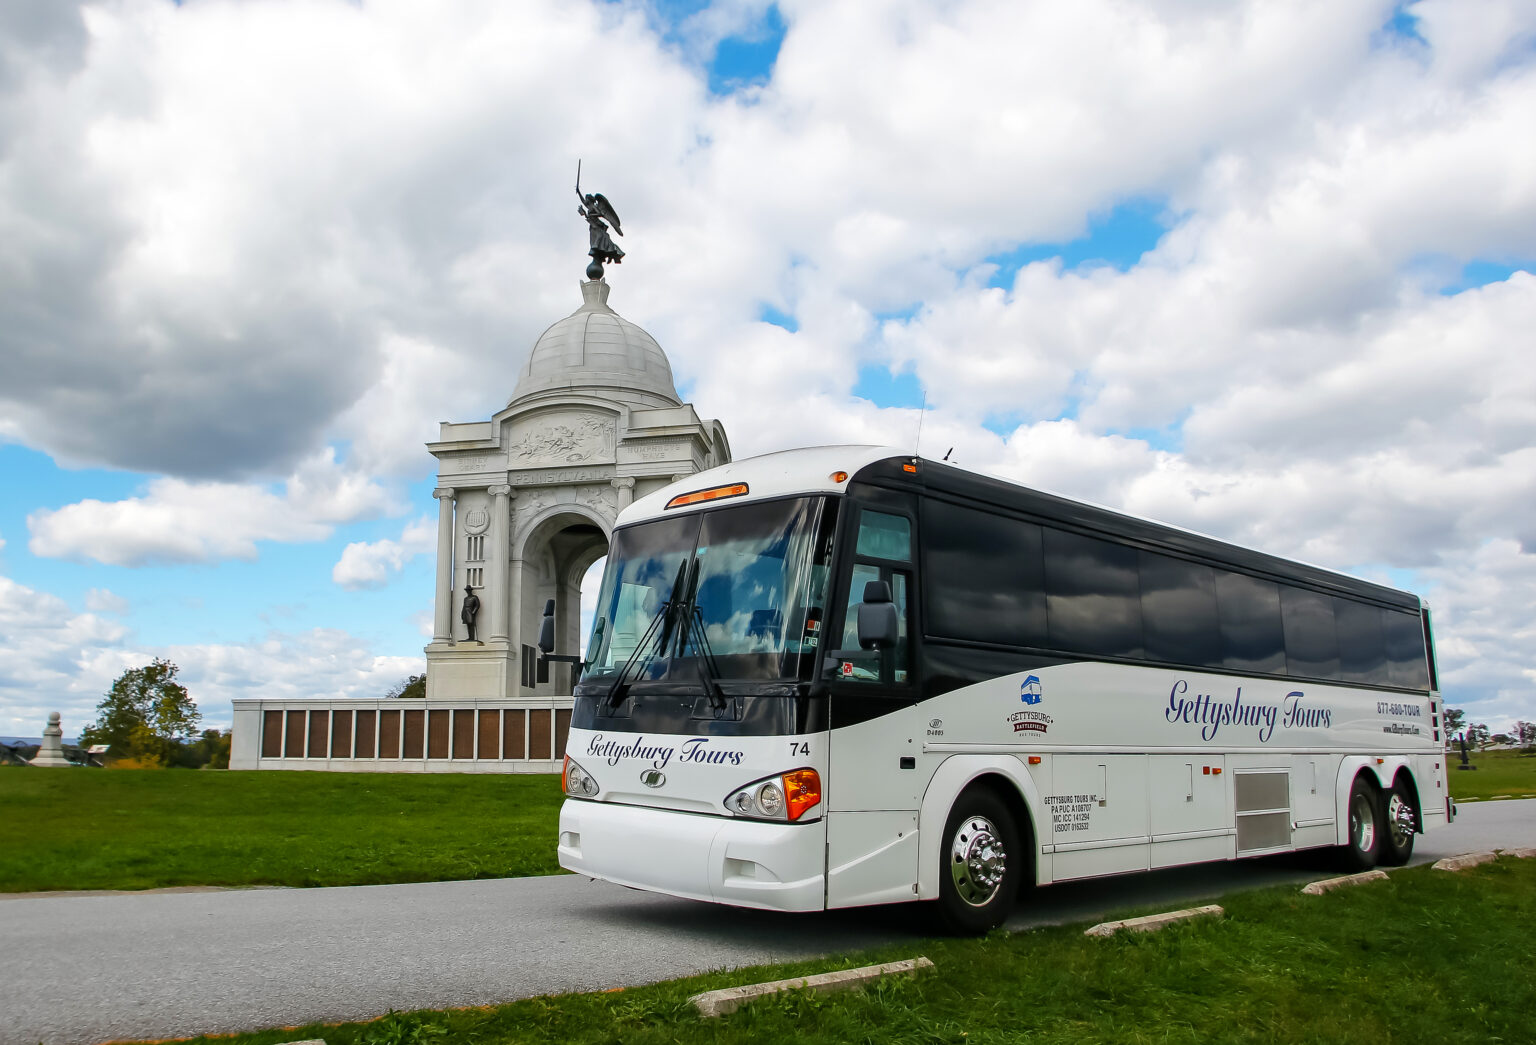 gettysburg battlefield tour bus